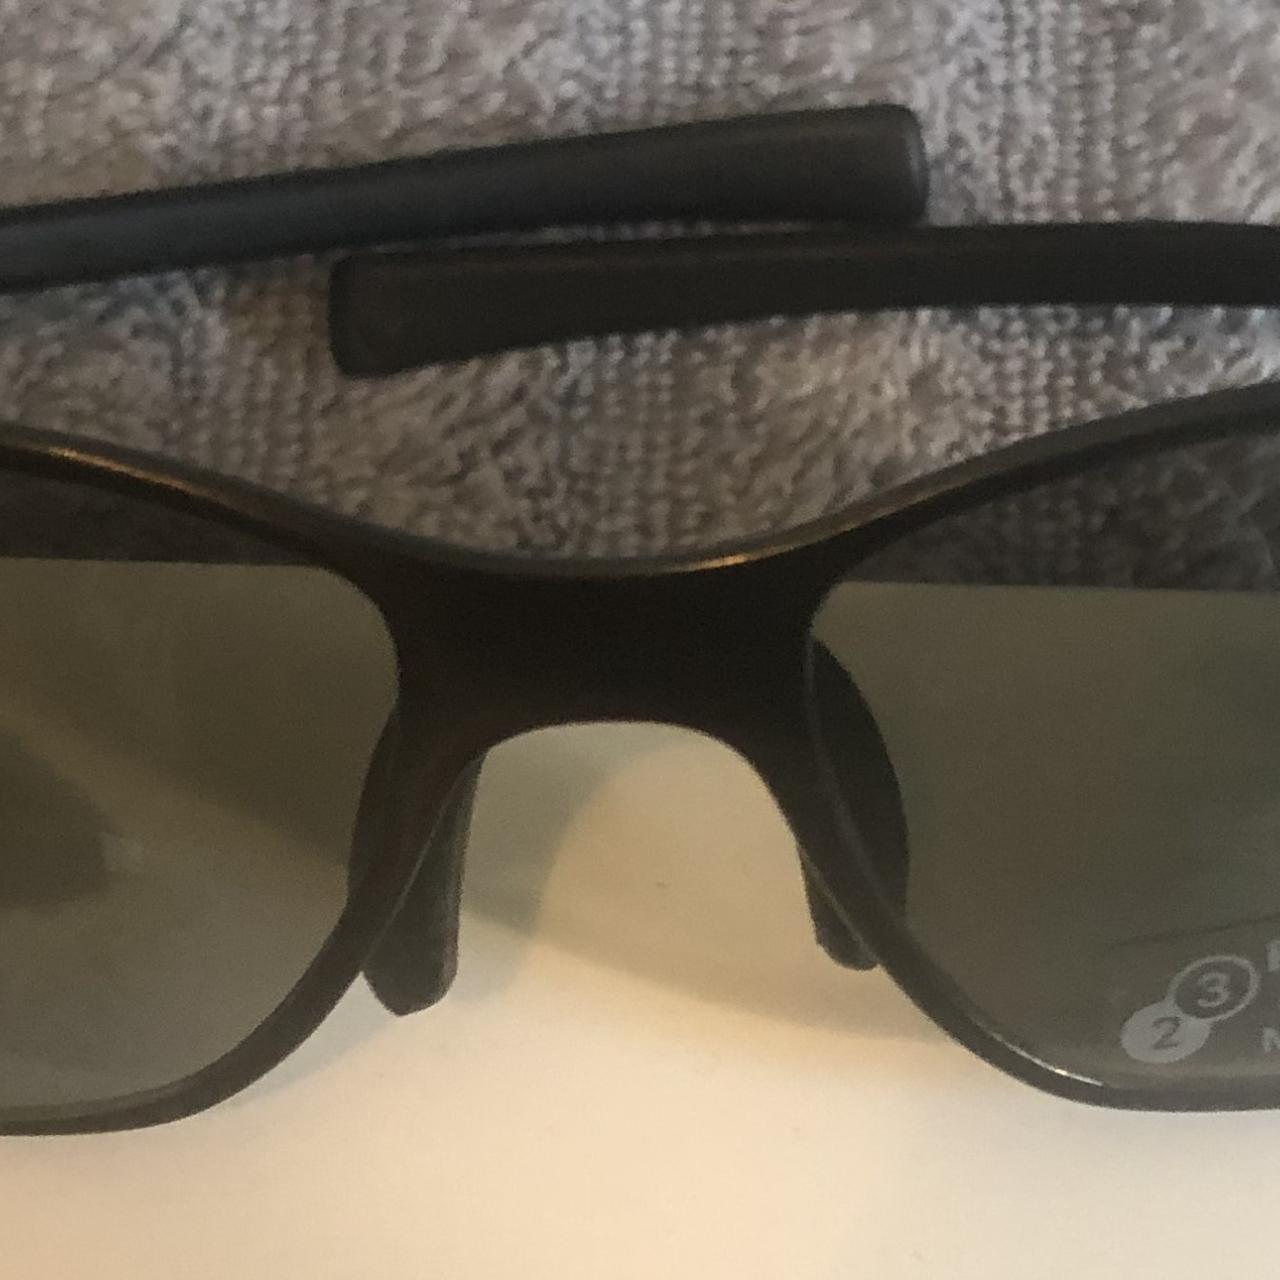 Product Image 3 - TAG Heuer Sunglasses -Gunmetal Black